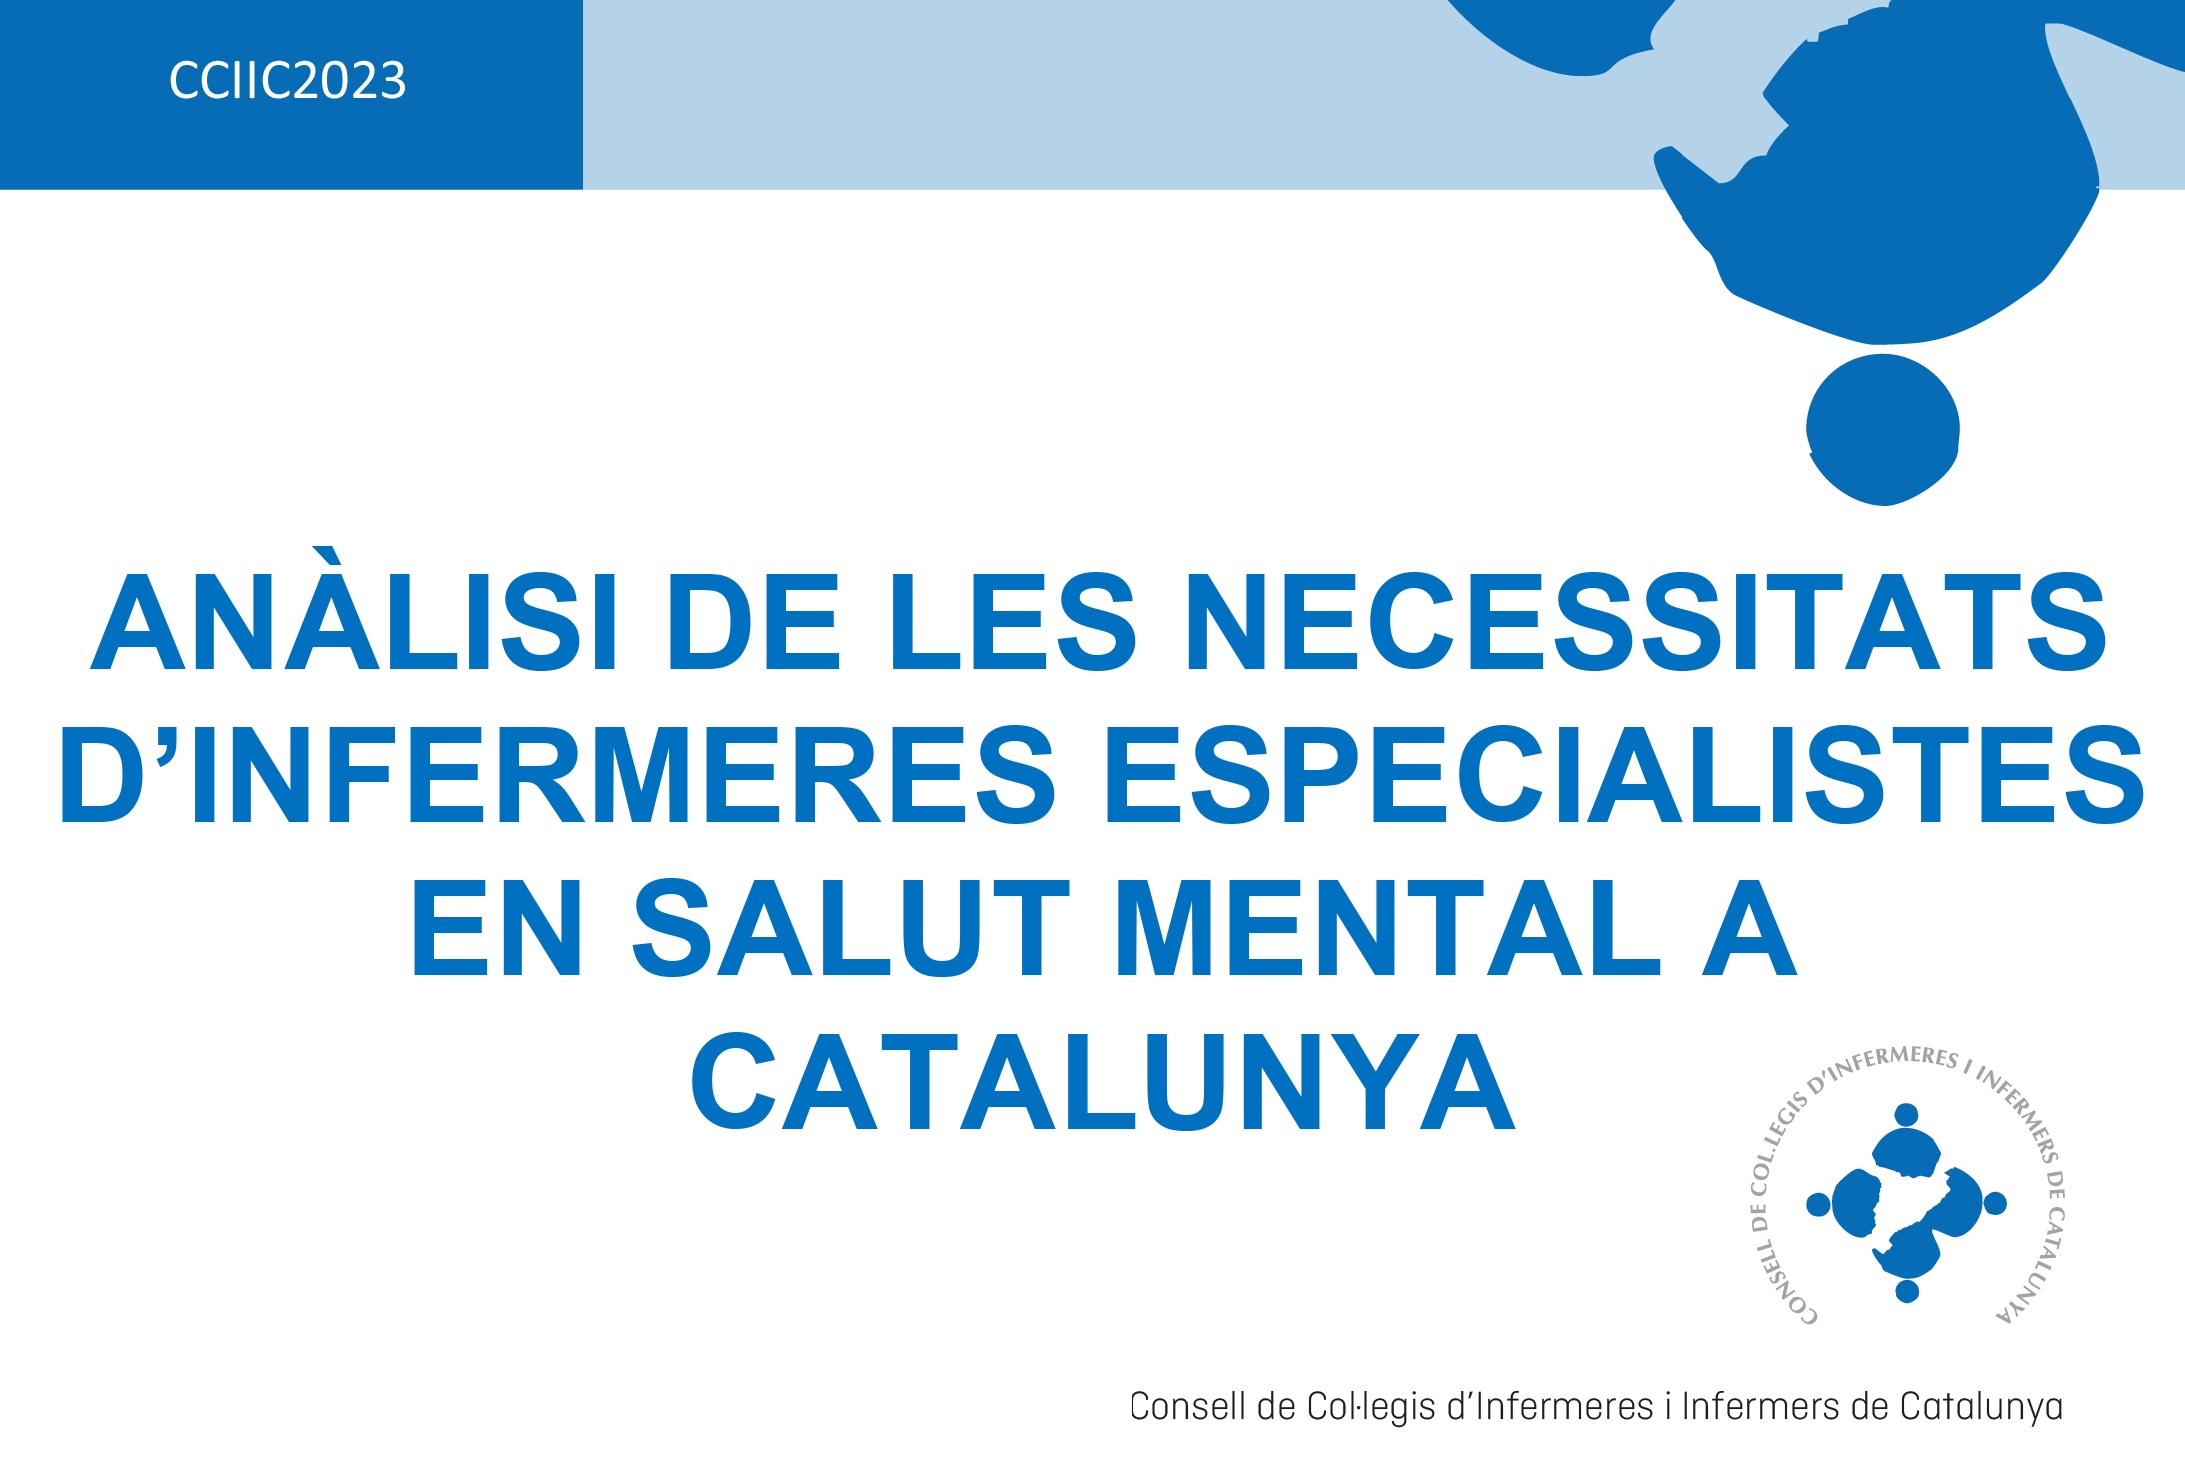 El CCIIC publica l'anàlisi de les necessitats d'infermeres especialistes en salut mental a Catalunya